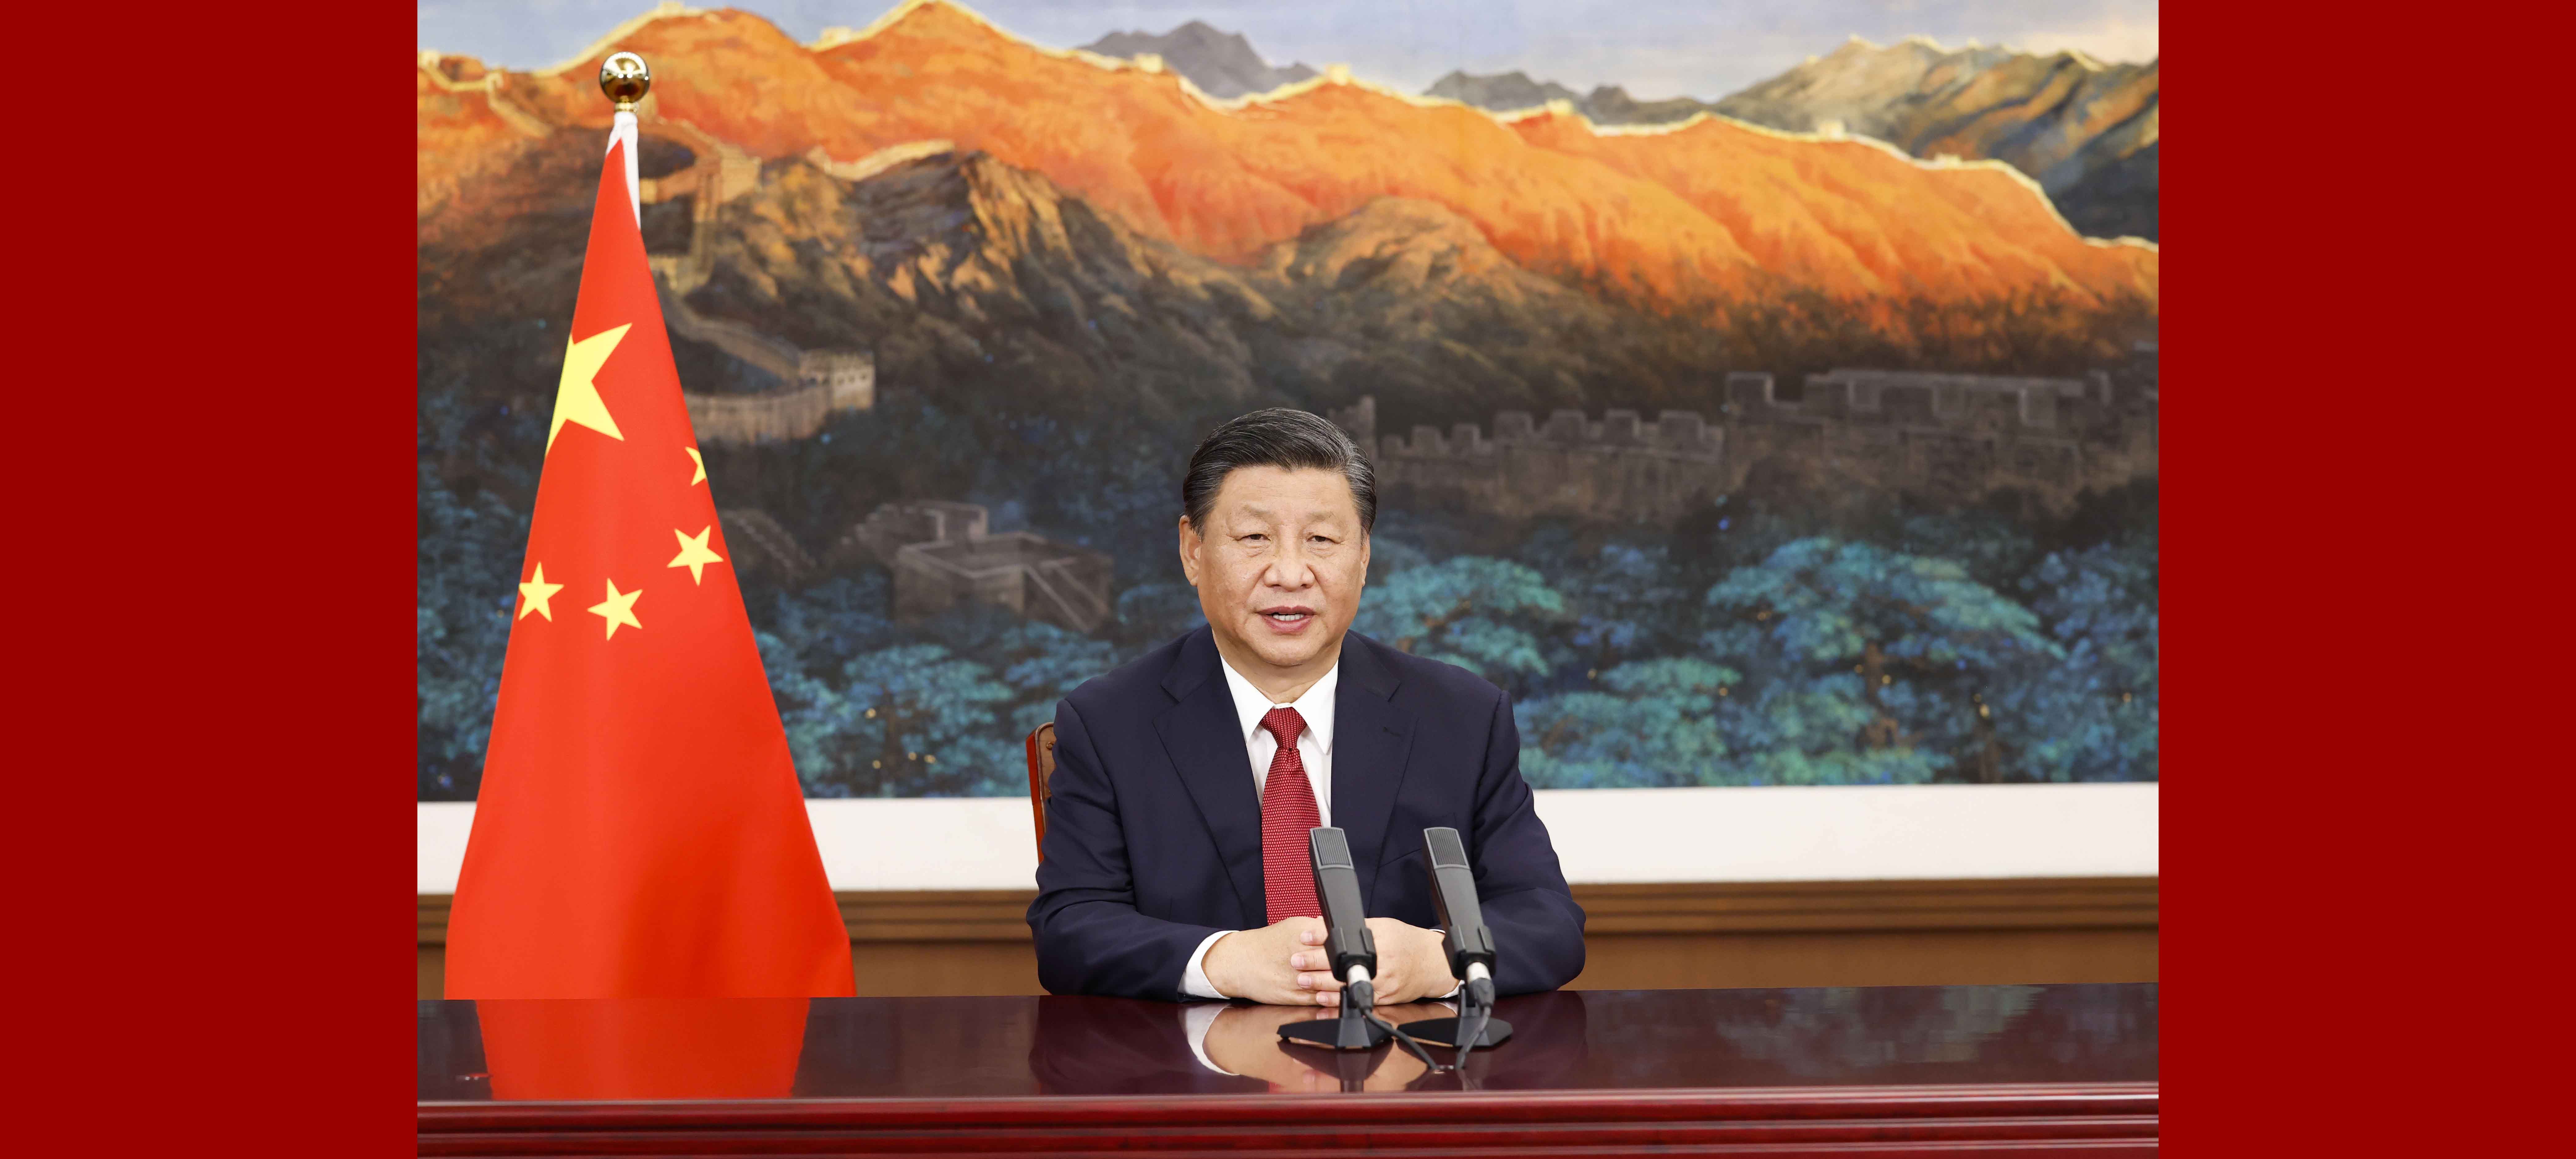 Xi pede abertura e cooperação em ciência e tecnologia